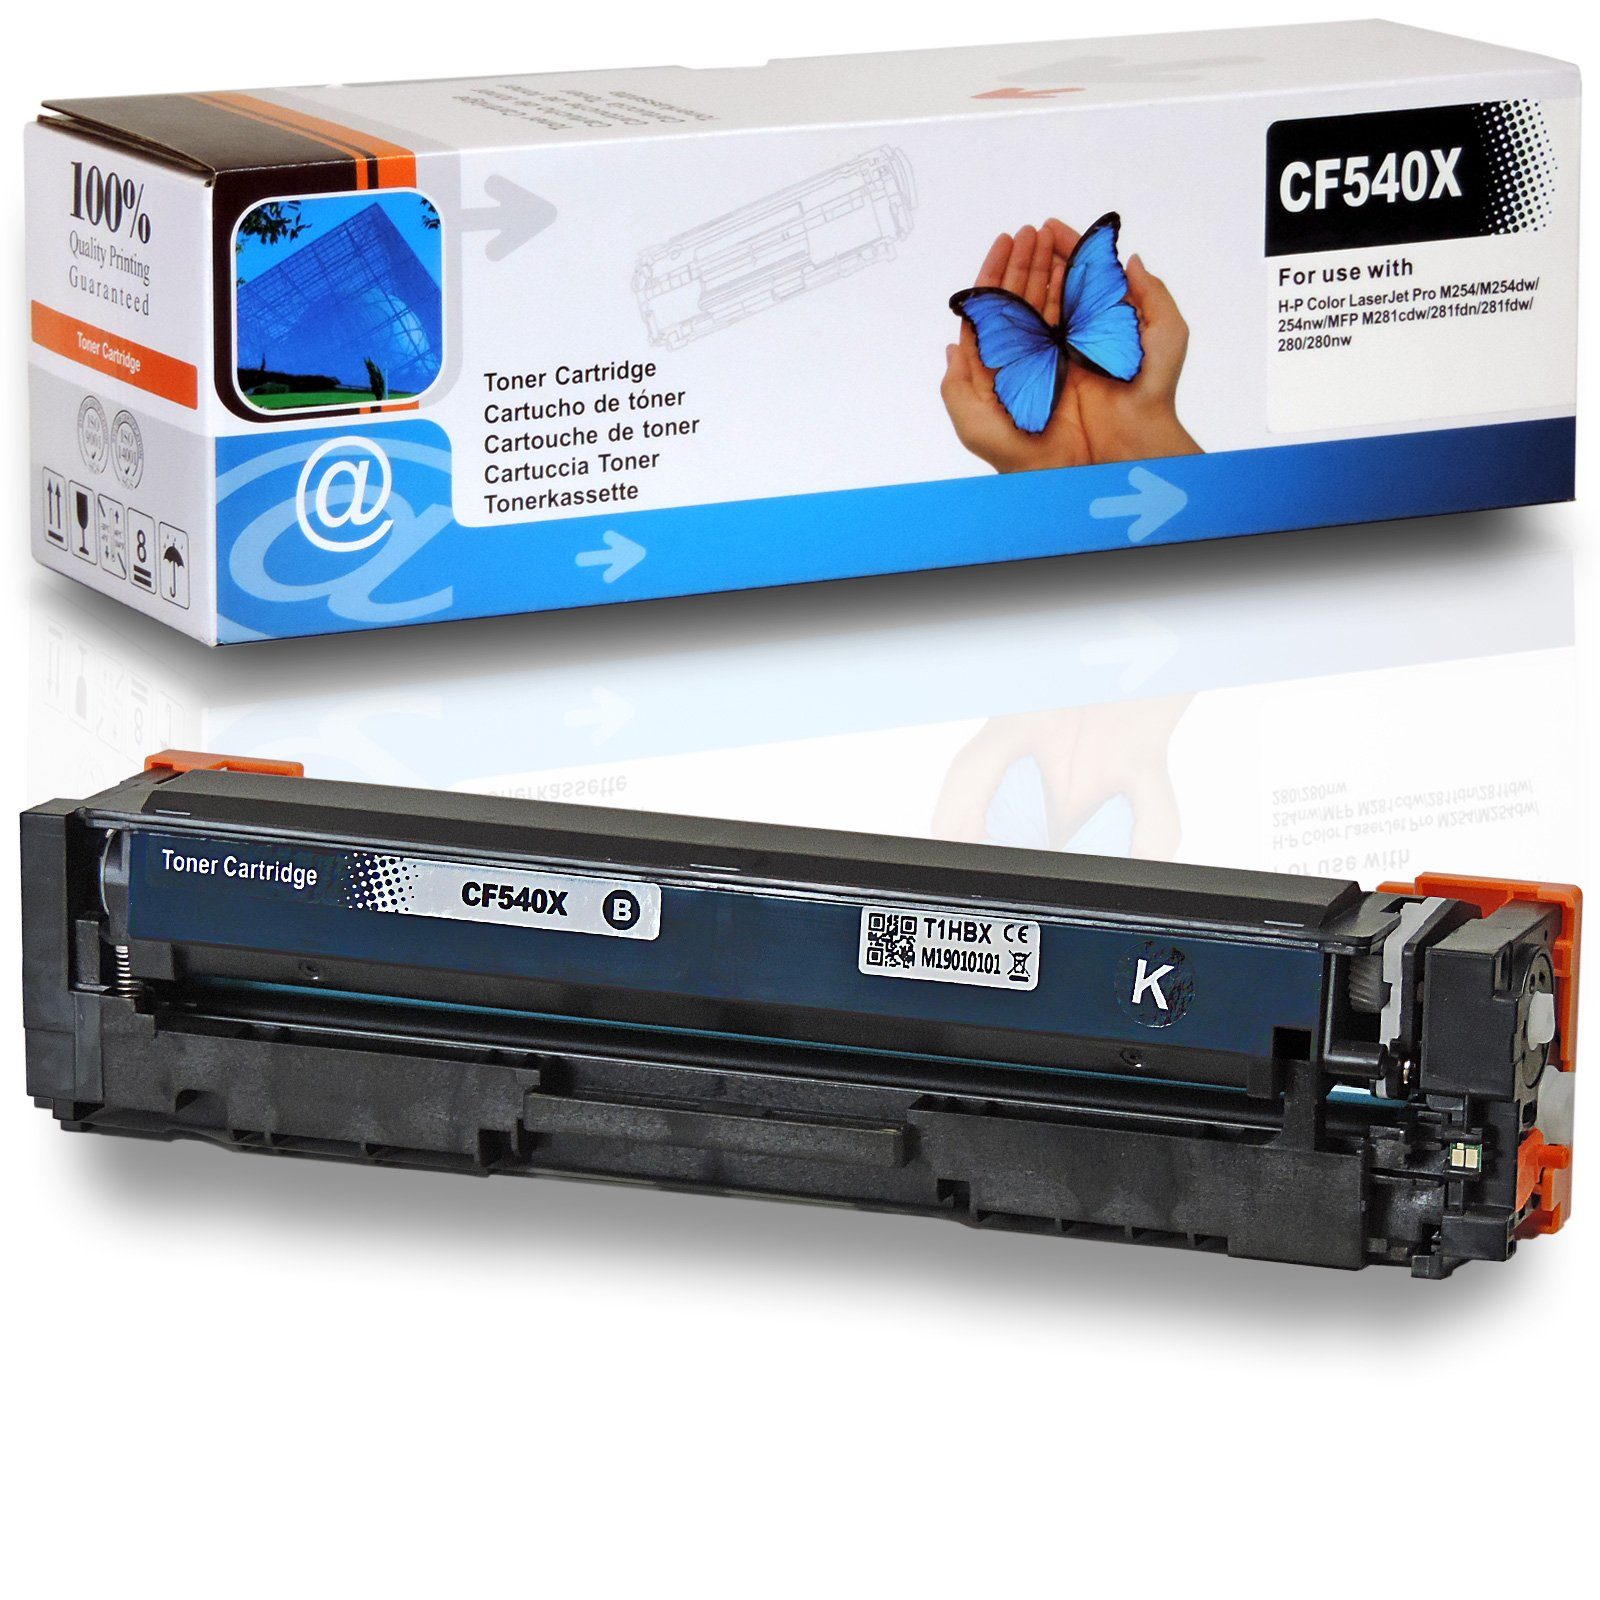 D&C Tonerkartusche Kompatibel HP 203X, CF540X Schwarz, für HP Color LaserJet Pro MFP M 280 nw und weitere | Tonerpatronen